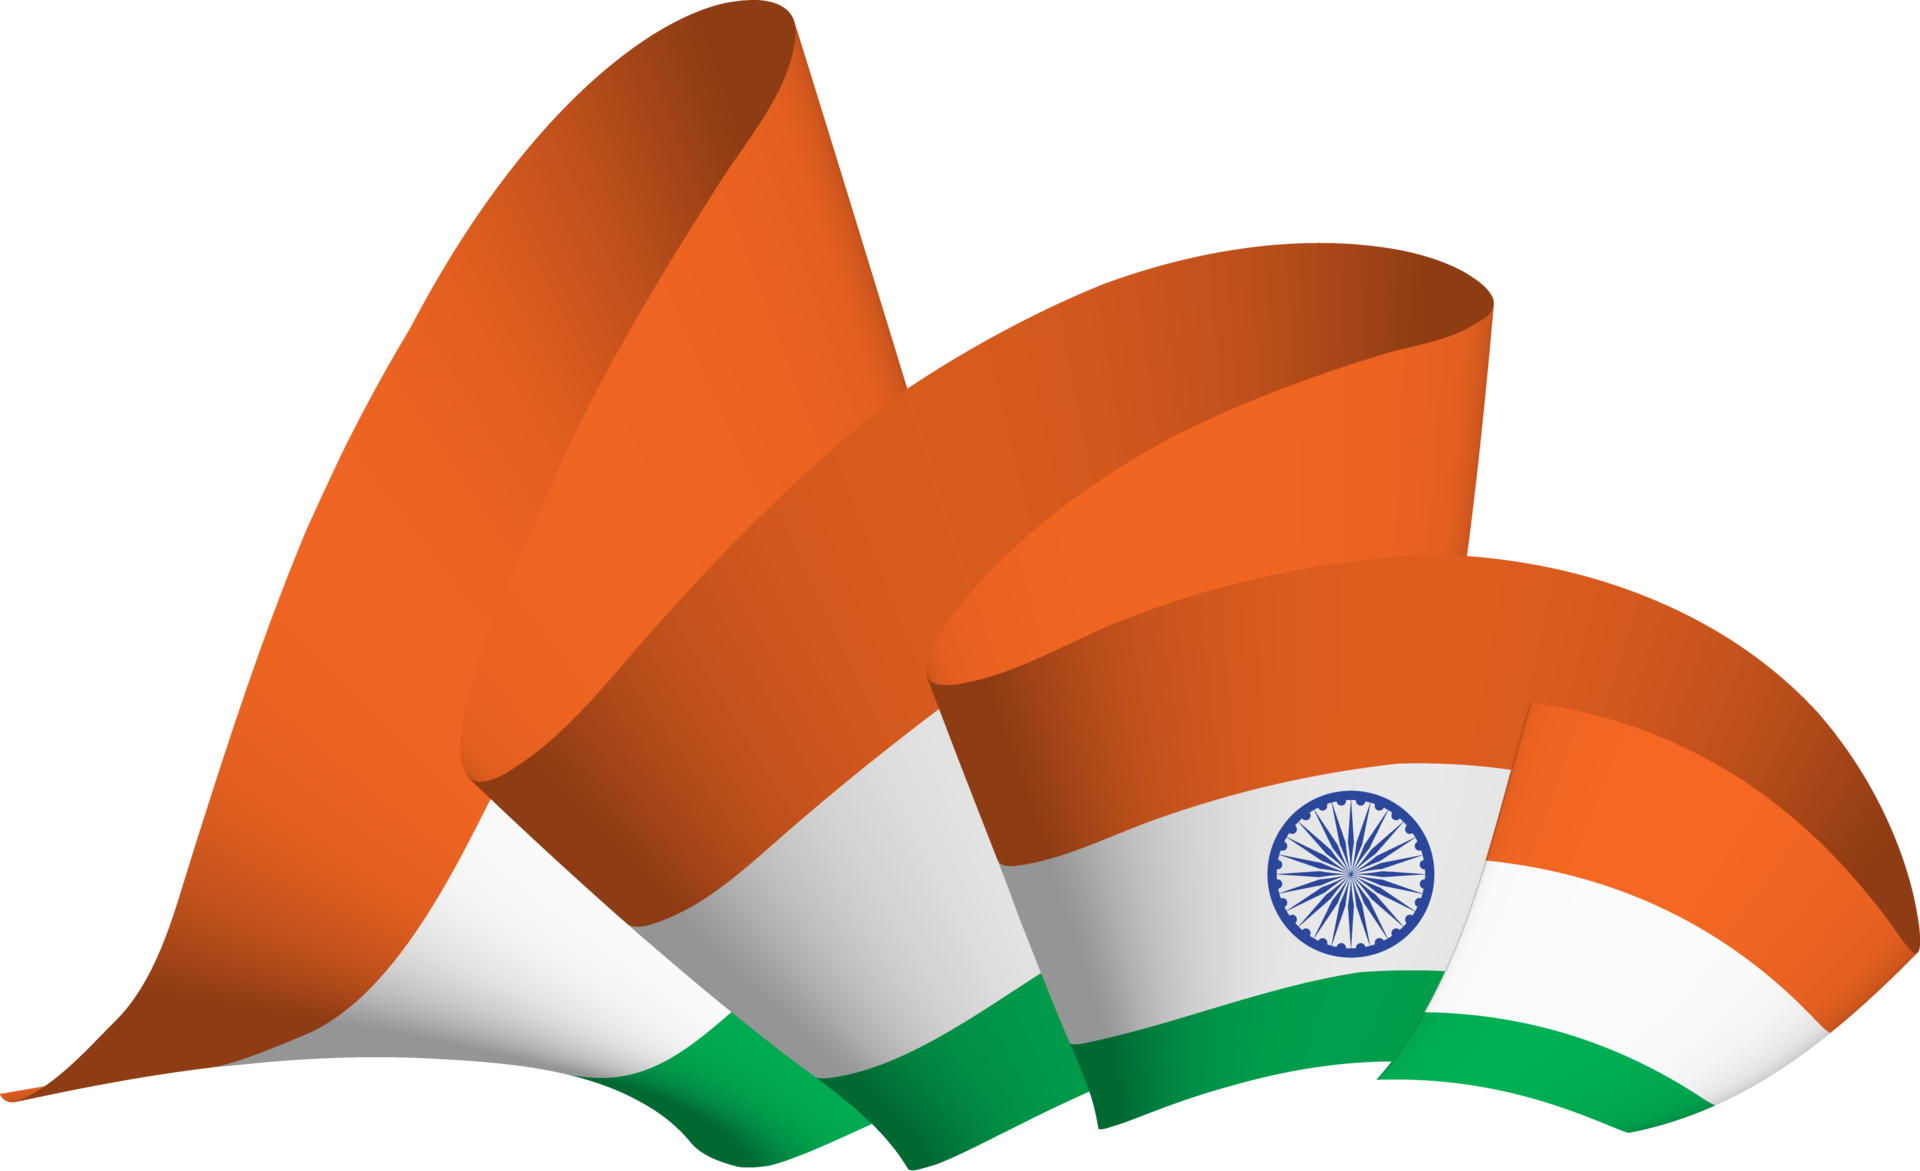 Hãy chiêm ngưỡng cờ Ấn Độ đầy hoa văn và ý nghĩa, với màu xanh tươi trên phần trên biểu tượng cho sự tự do và sự hiện diện của các chủng tộc, còn màu cam dưới biểu thị sự tham gia và năng động của quốc gia.